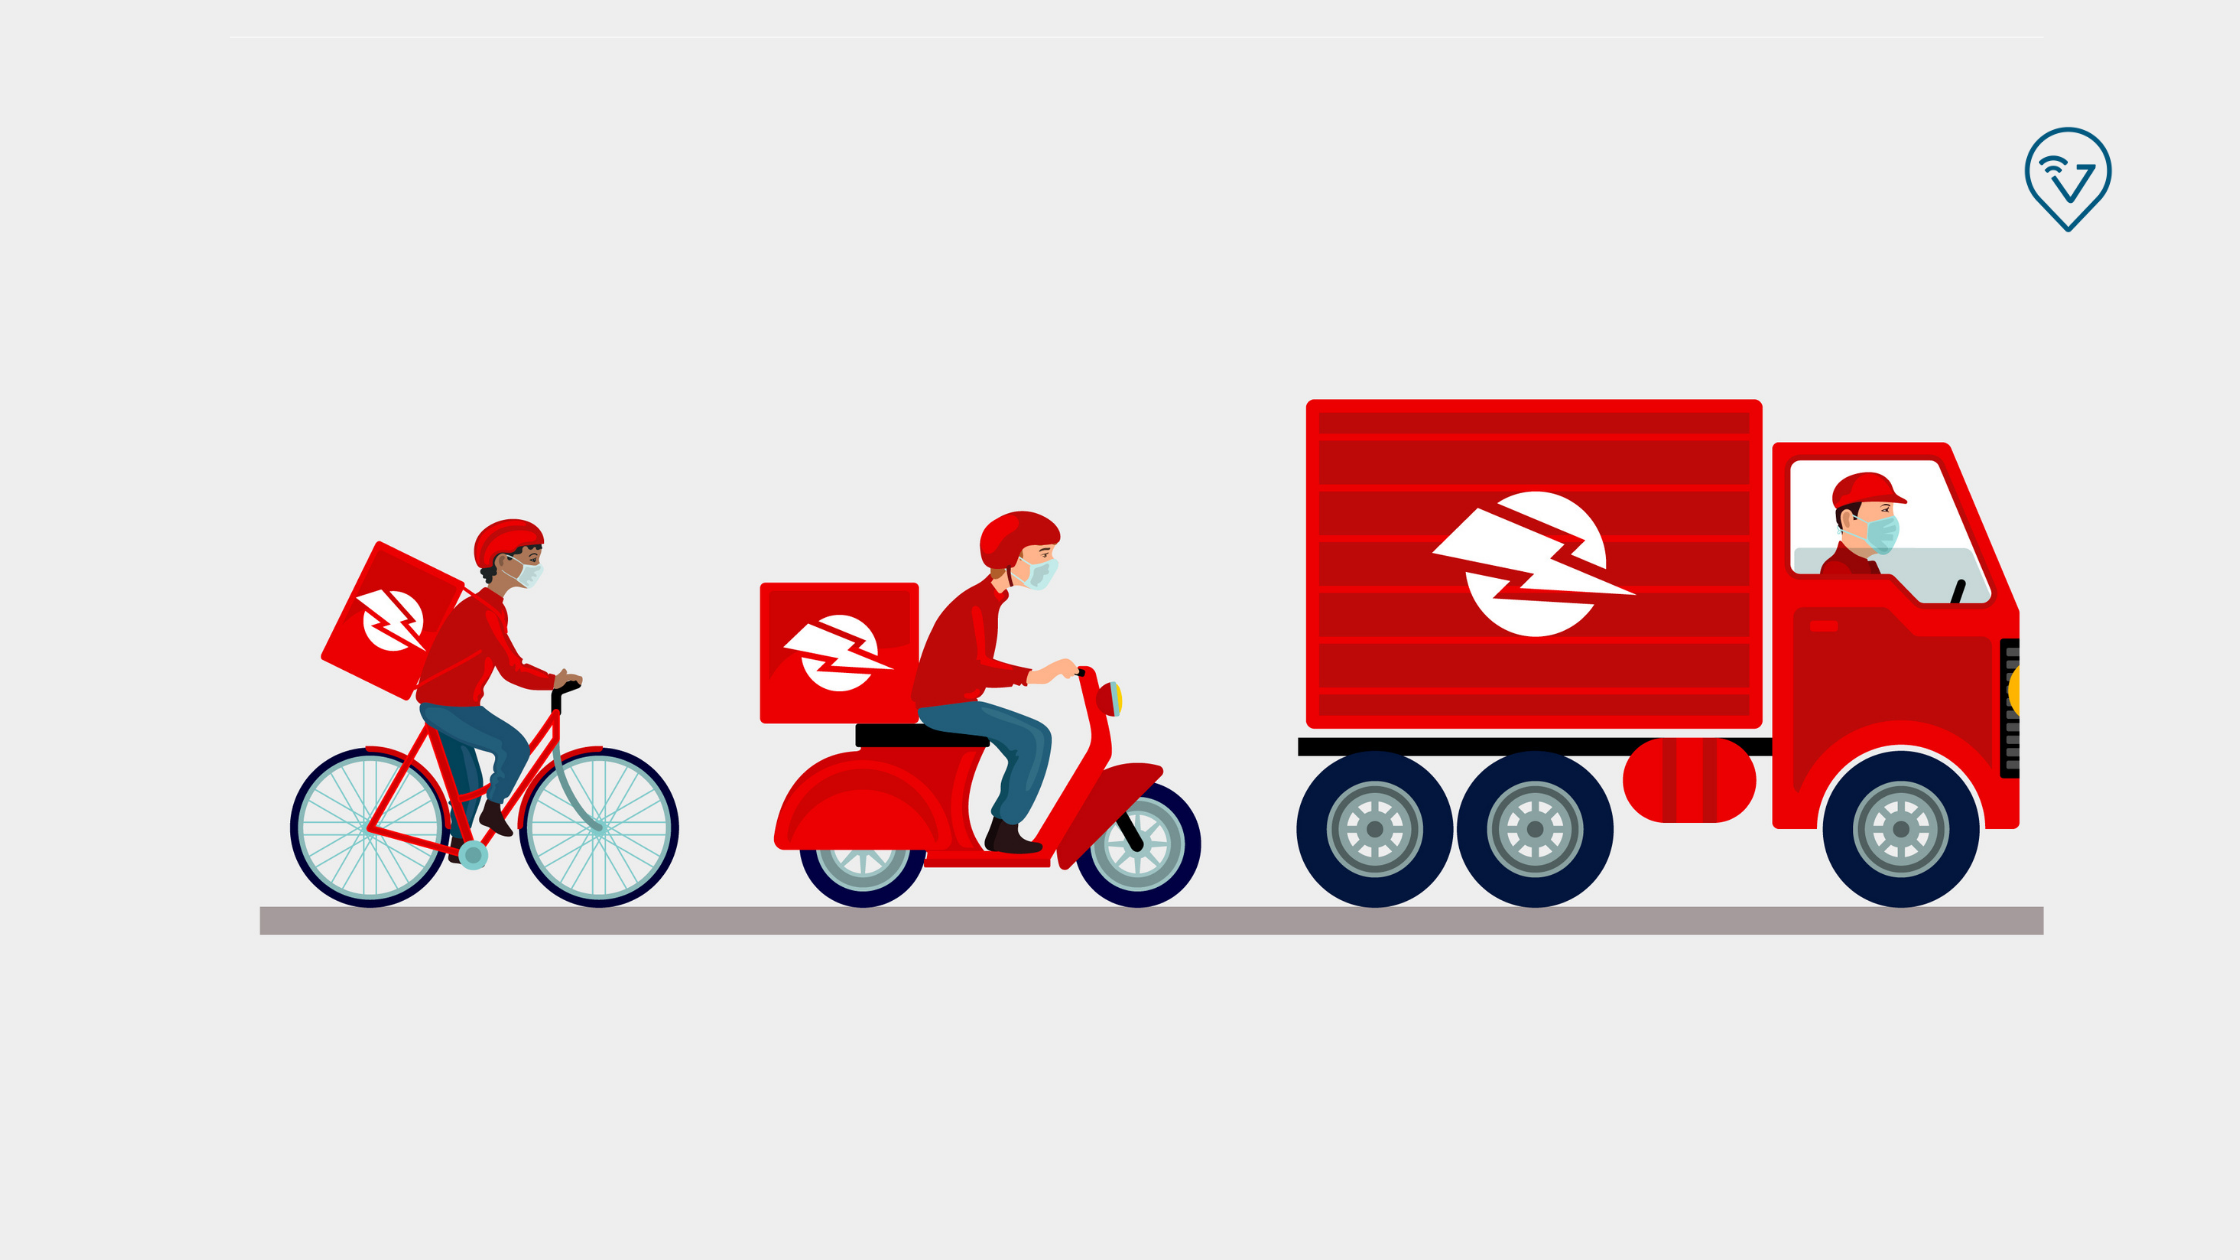 frota de veiculos: imagem de moto, bicicleta e caminhão mostrando a diversidade